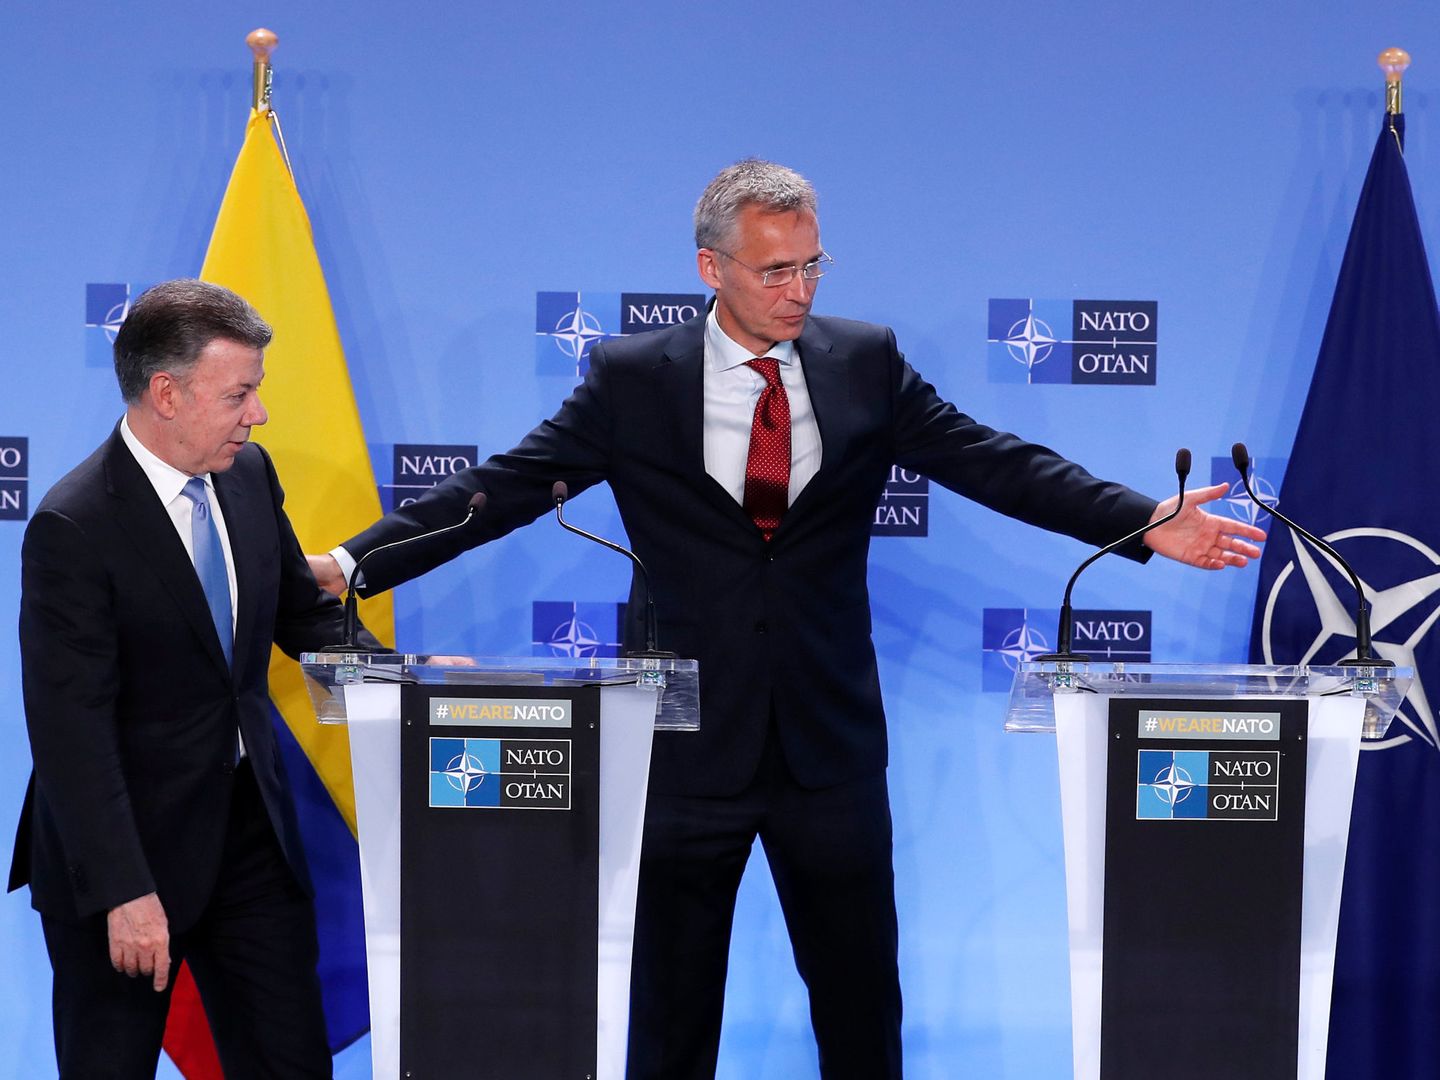 El Secretario General de la OTAN Jens Stoltenberg le cede el espacio al presidente colombiano Juan Manuel Santos, durante su visita a la sede de la organización en Bruselas para sellar la asociación, el 31 de mayo de 2018. (Reuters)